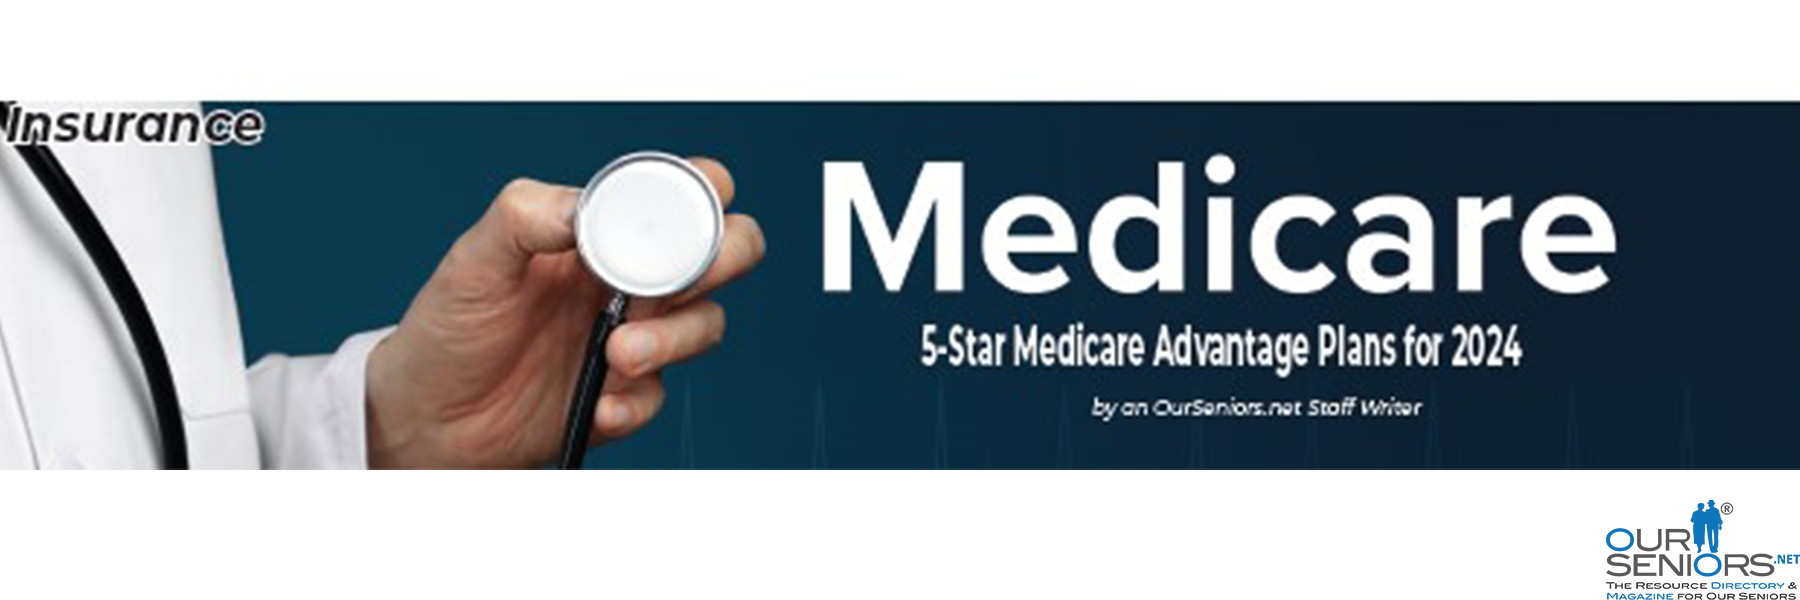 Medicare 5 star Medicare Advantage Plans for 2024 Slider